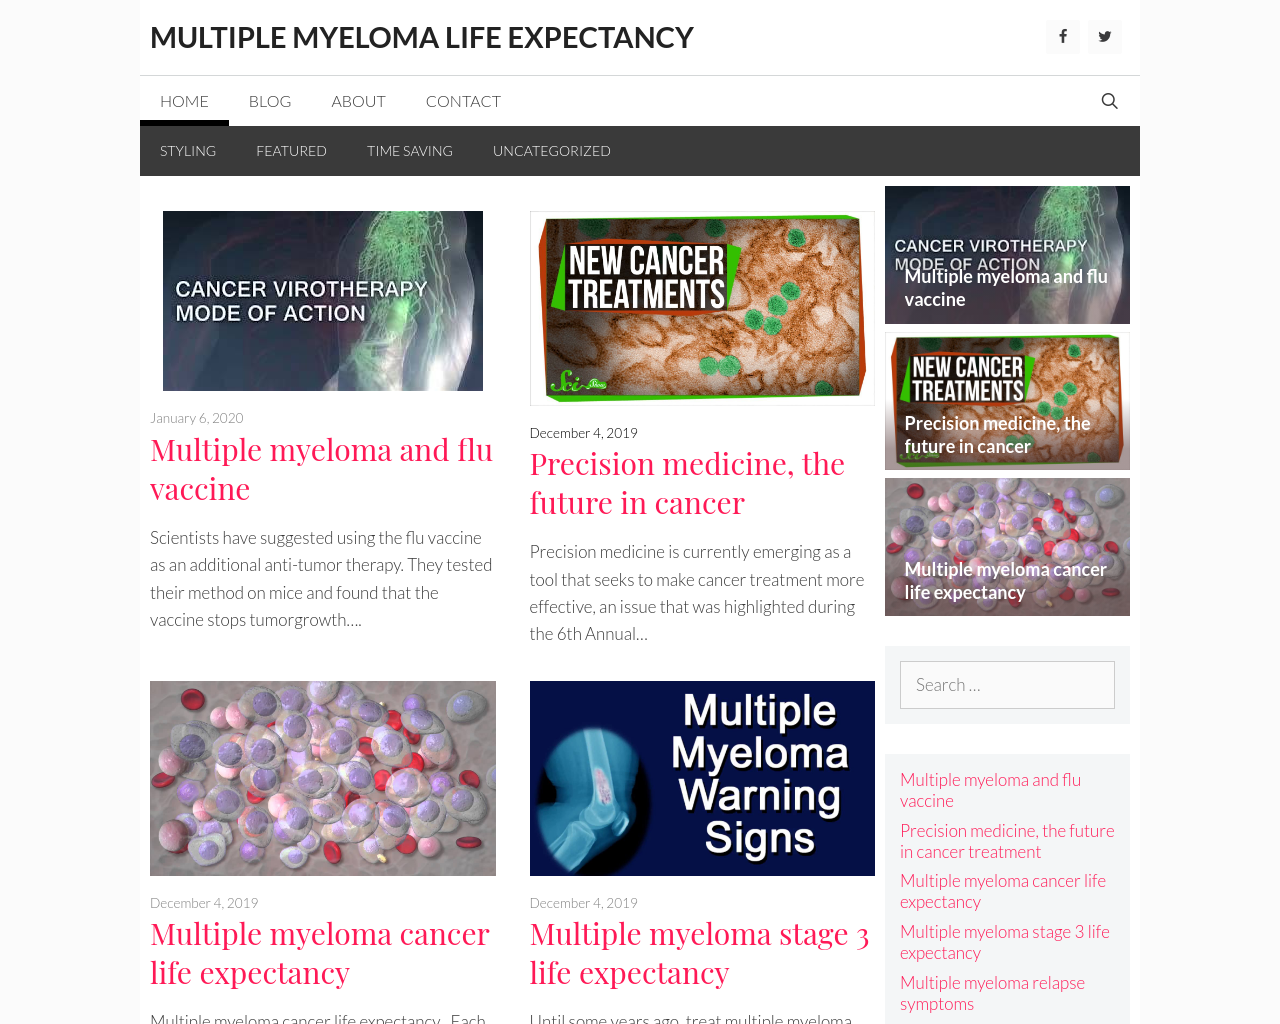 multiplemyelomalifeexpectancy.org